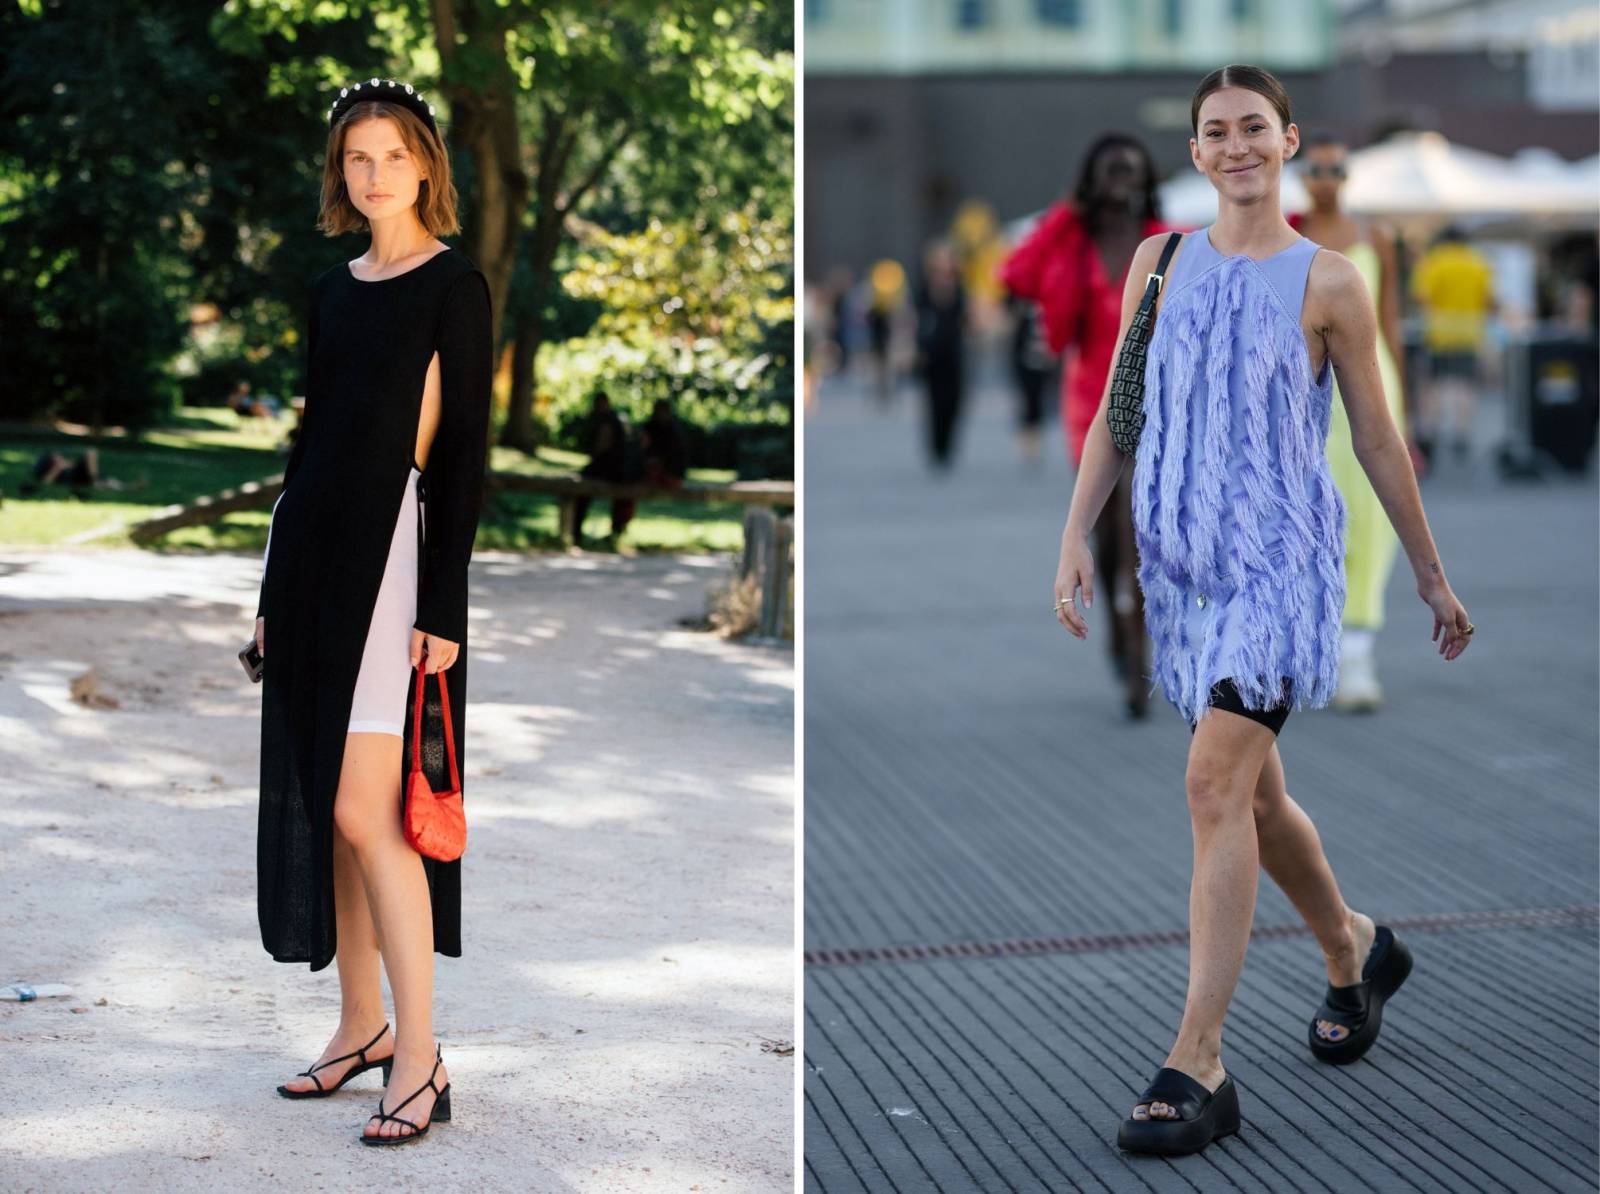 Wygoda i swoboda: Sukienka i kolarki to modna stylizacja na lato (Fot. Getty Images)